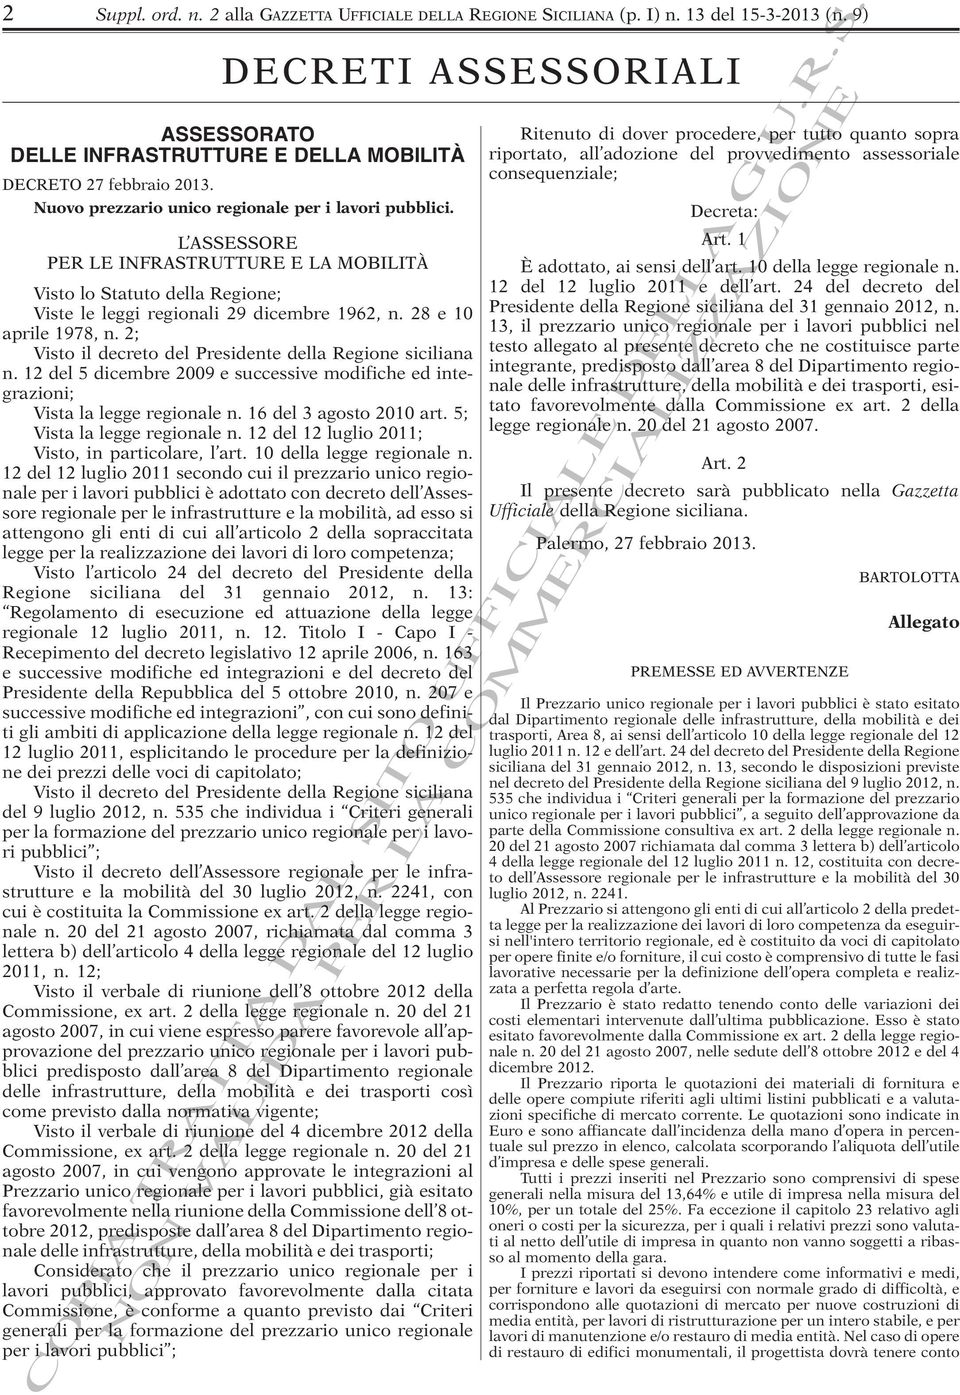 28 e 10 aprile 1978, n. 2; Visto il decreto del Presidente della Regione siciliana n. 12 del 5 dicembre 2009 e successive modifiche ed integrazioni; Vista la legge regionale n.